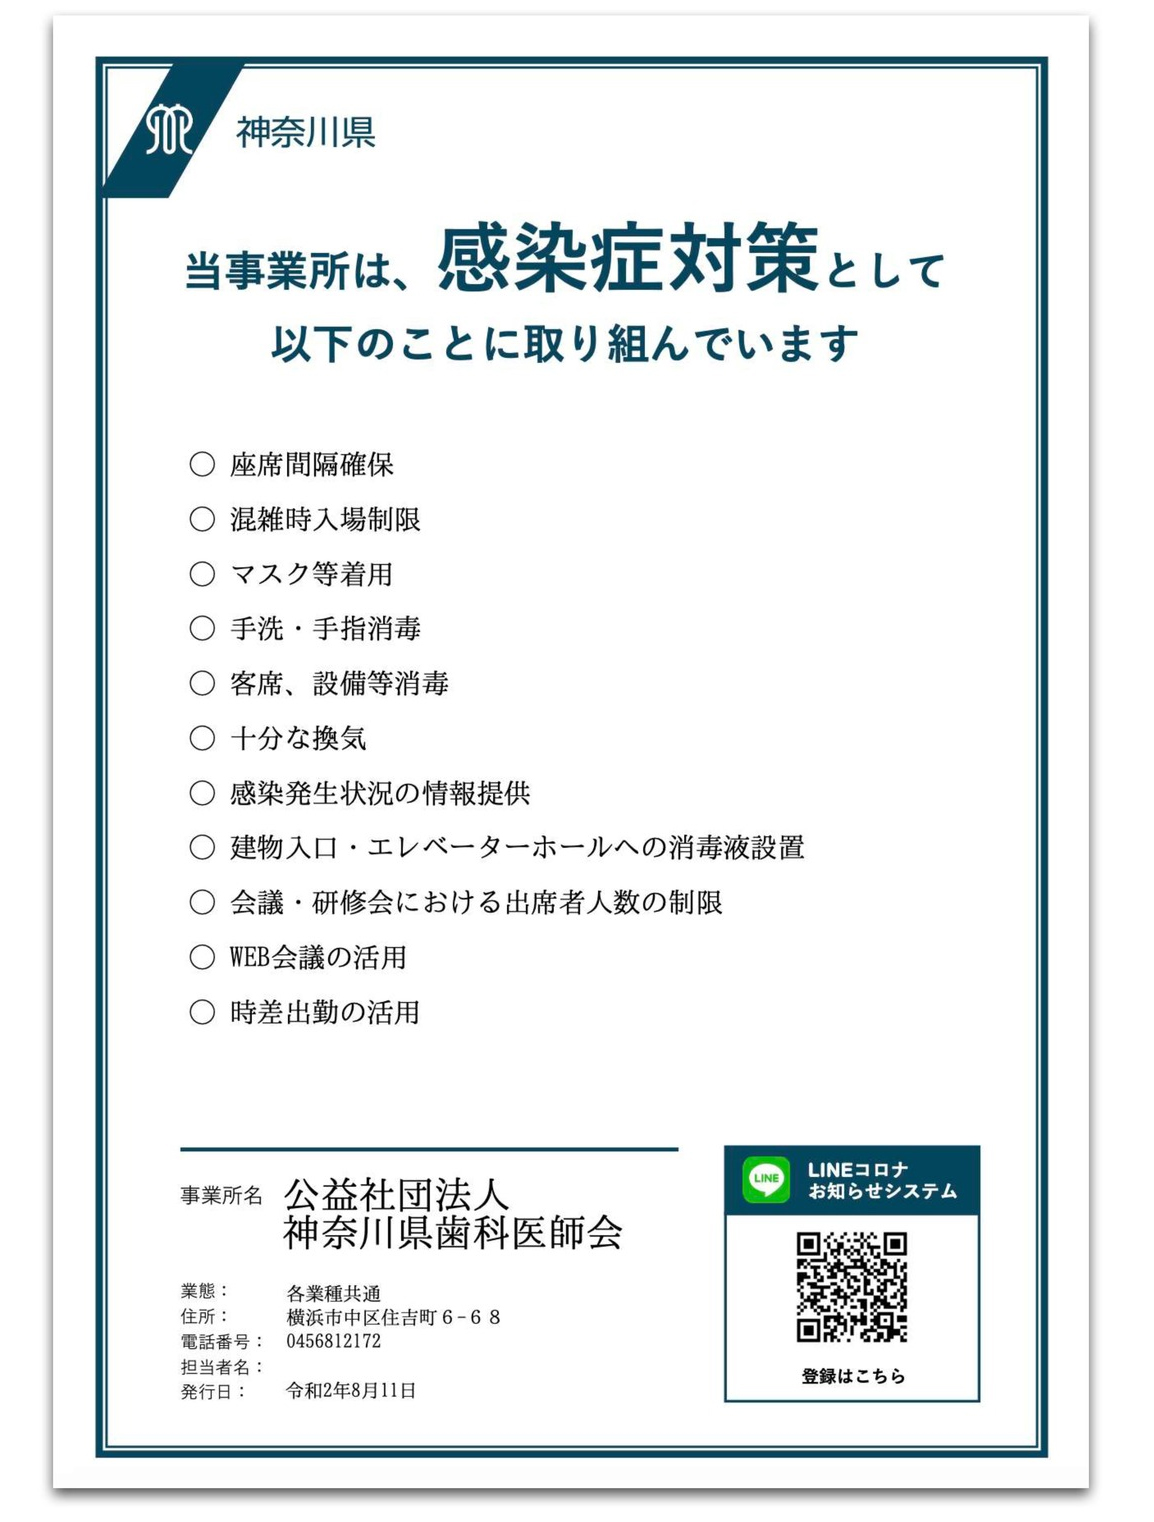 2-2．神奈川県感染防止対策取組書 チェックリスト